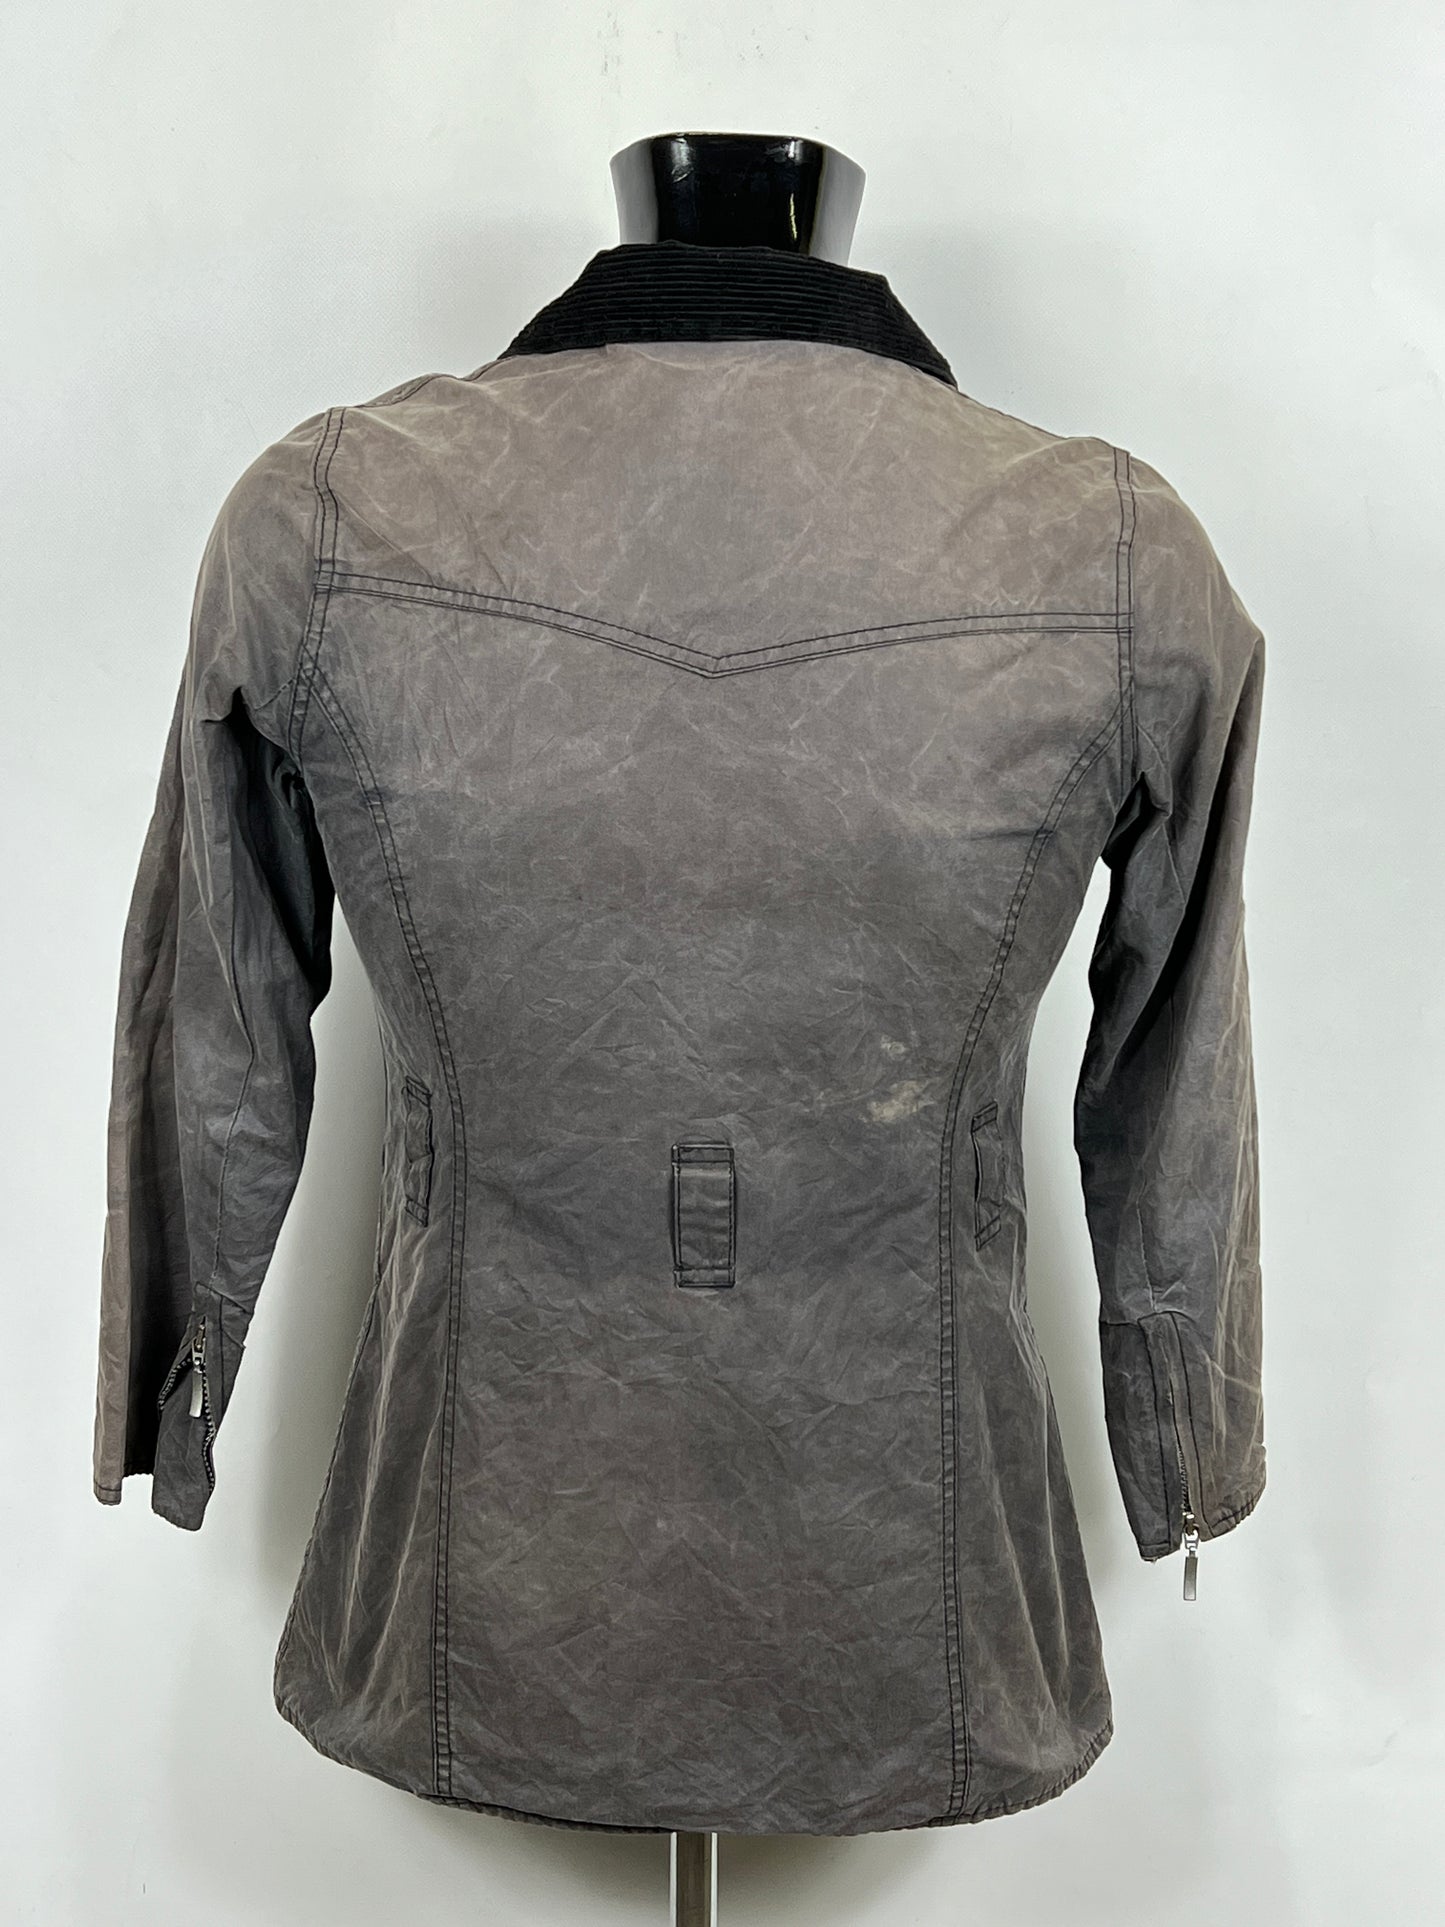 Giacca Barbour donna grigio UK8 Tg. 38 Lady Dark Grey wax Jacket XSmall size uk8